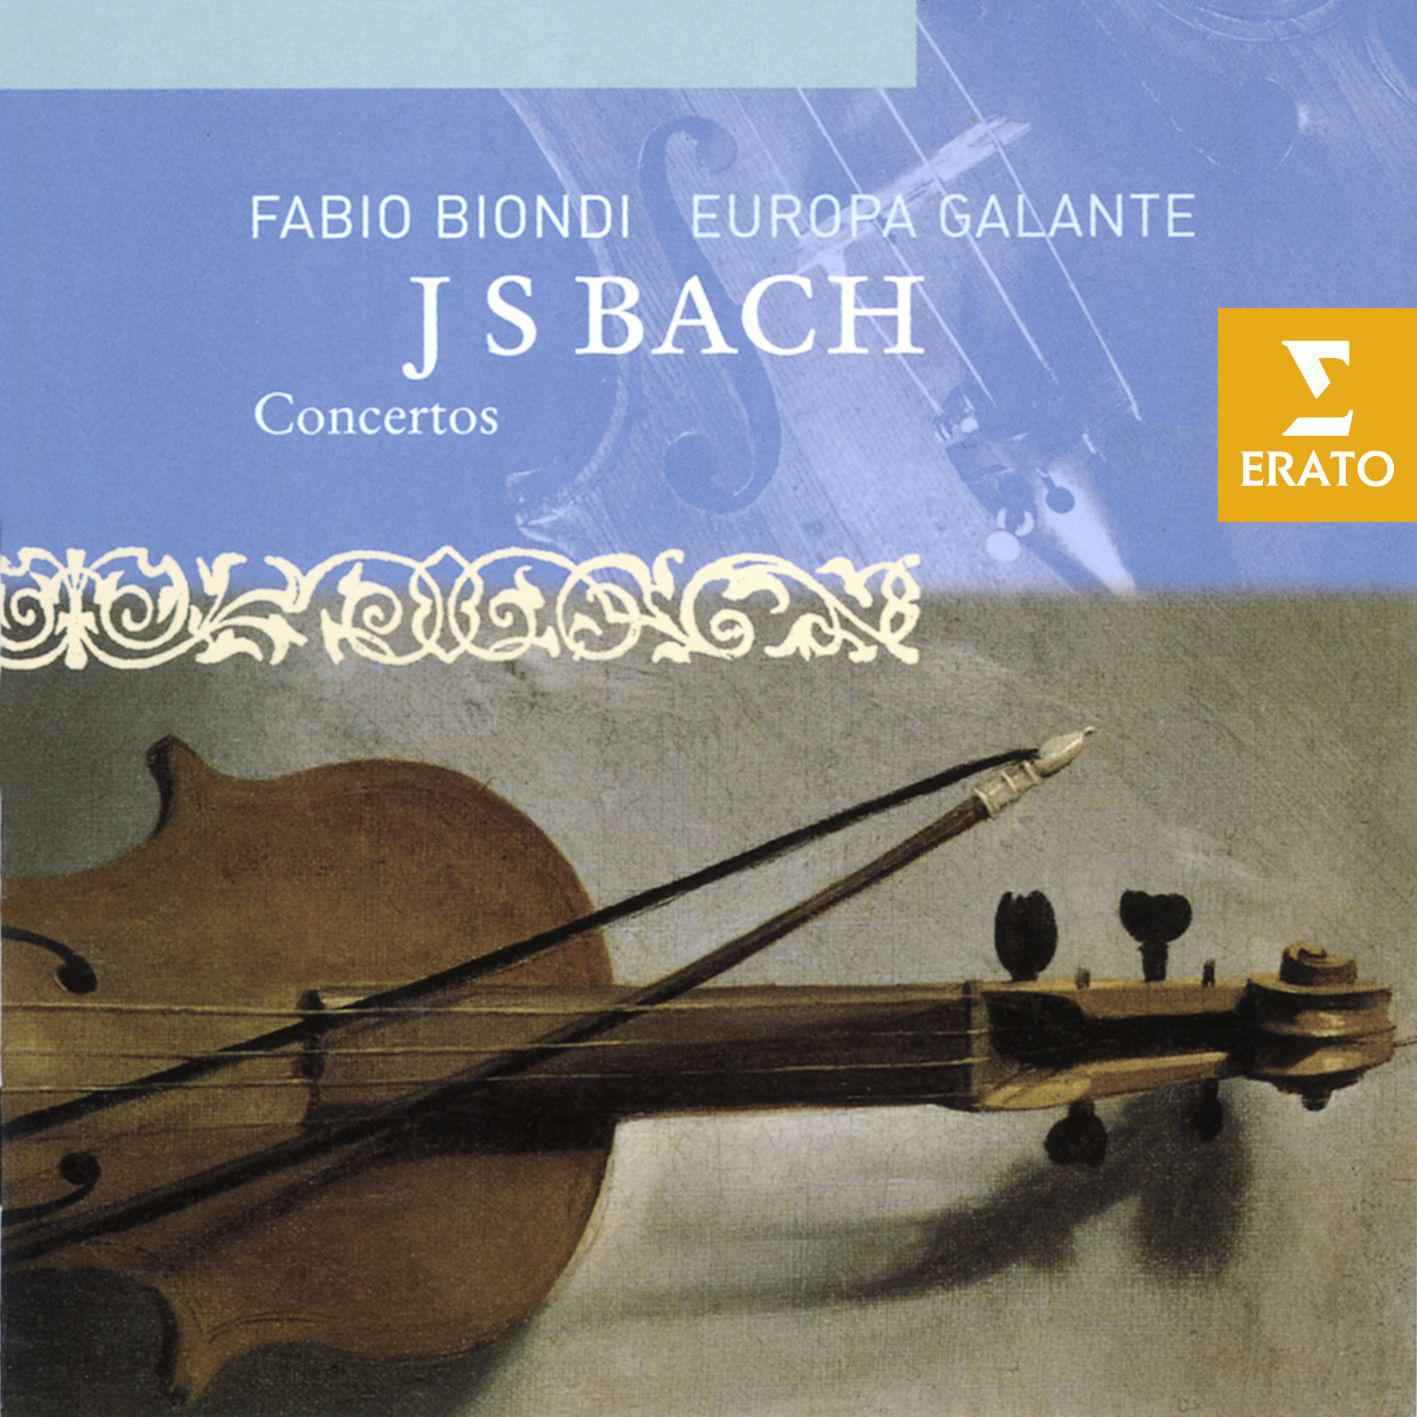 Fabio Biondi/Europa Galante - Violin Concerto in G minor (from Harpsichord Concerto in F minor) BWV1056: III. Presto